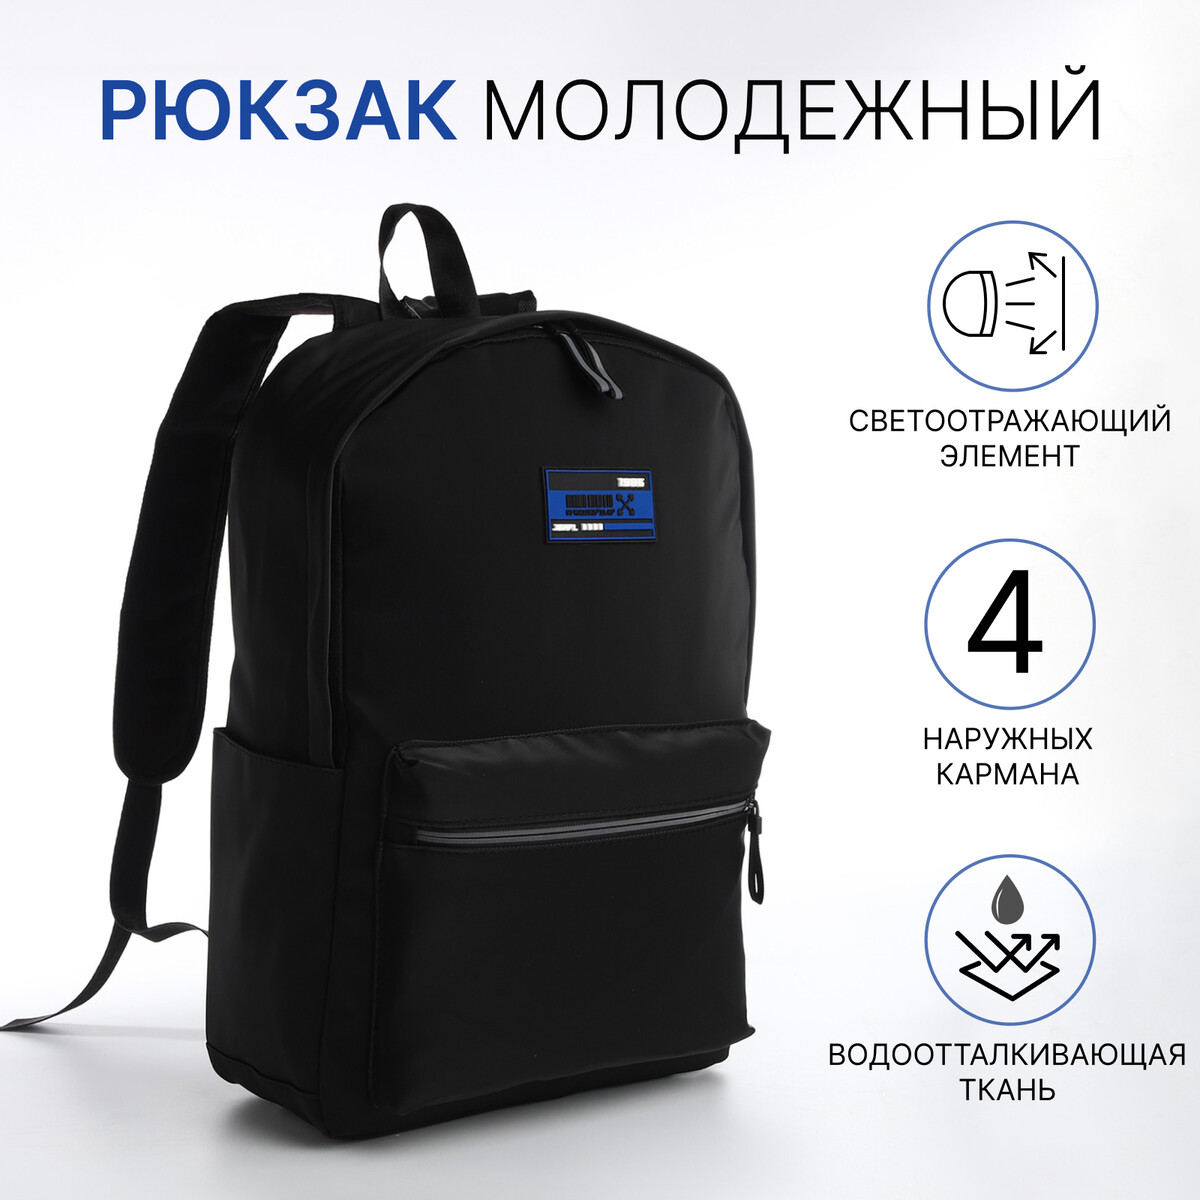 Рюкзак молодежный из текстиля на молнии, 4 кармана, цвет черный/синий рюкзак сумка из текстиля на молнии 3 кармана отдел для ноутбука синий